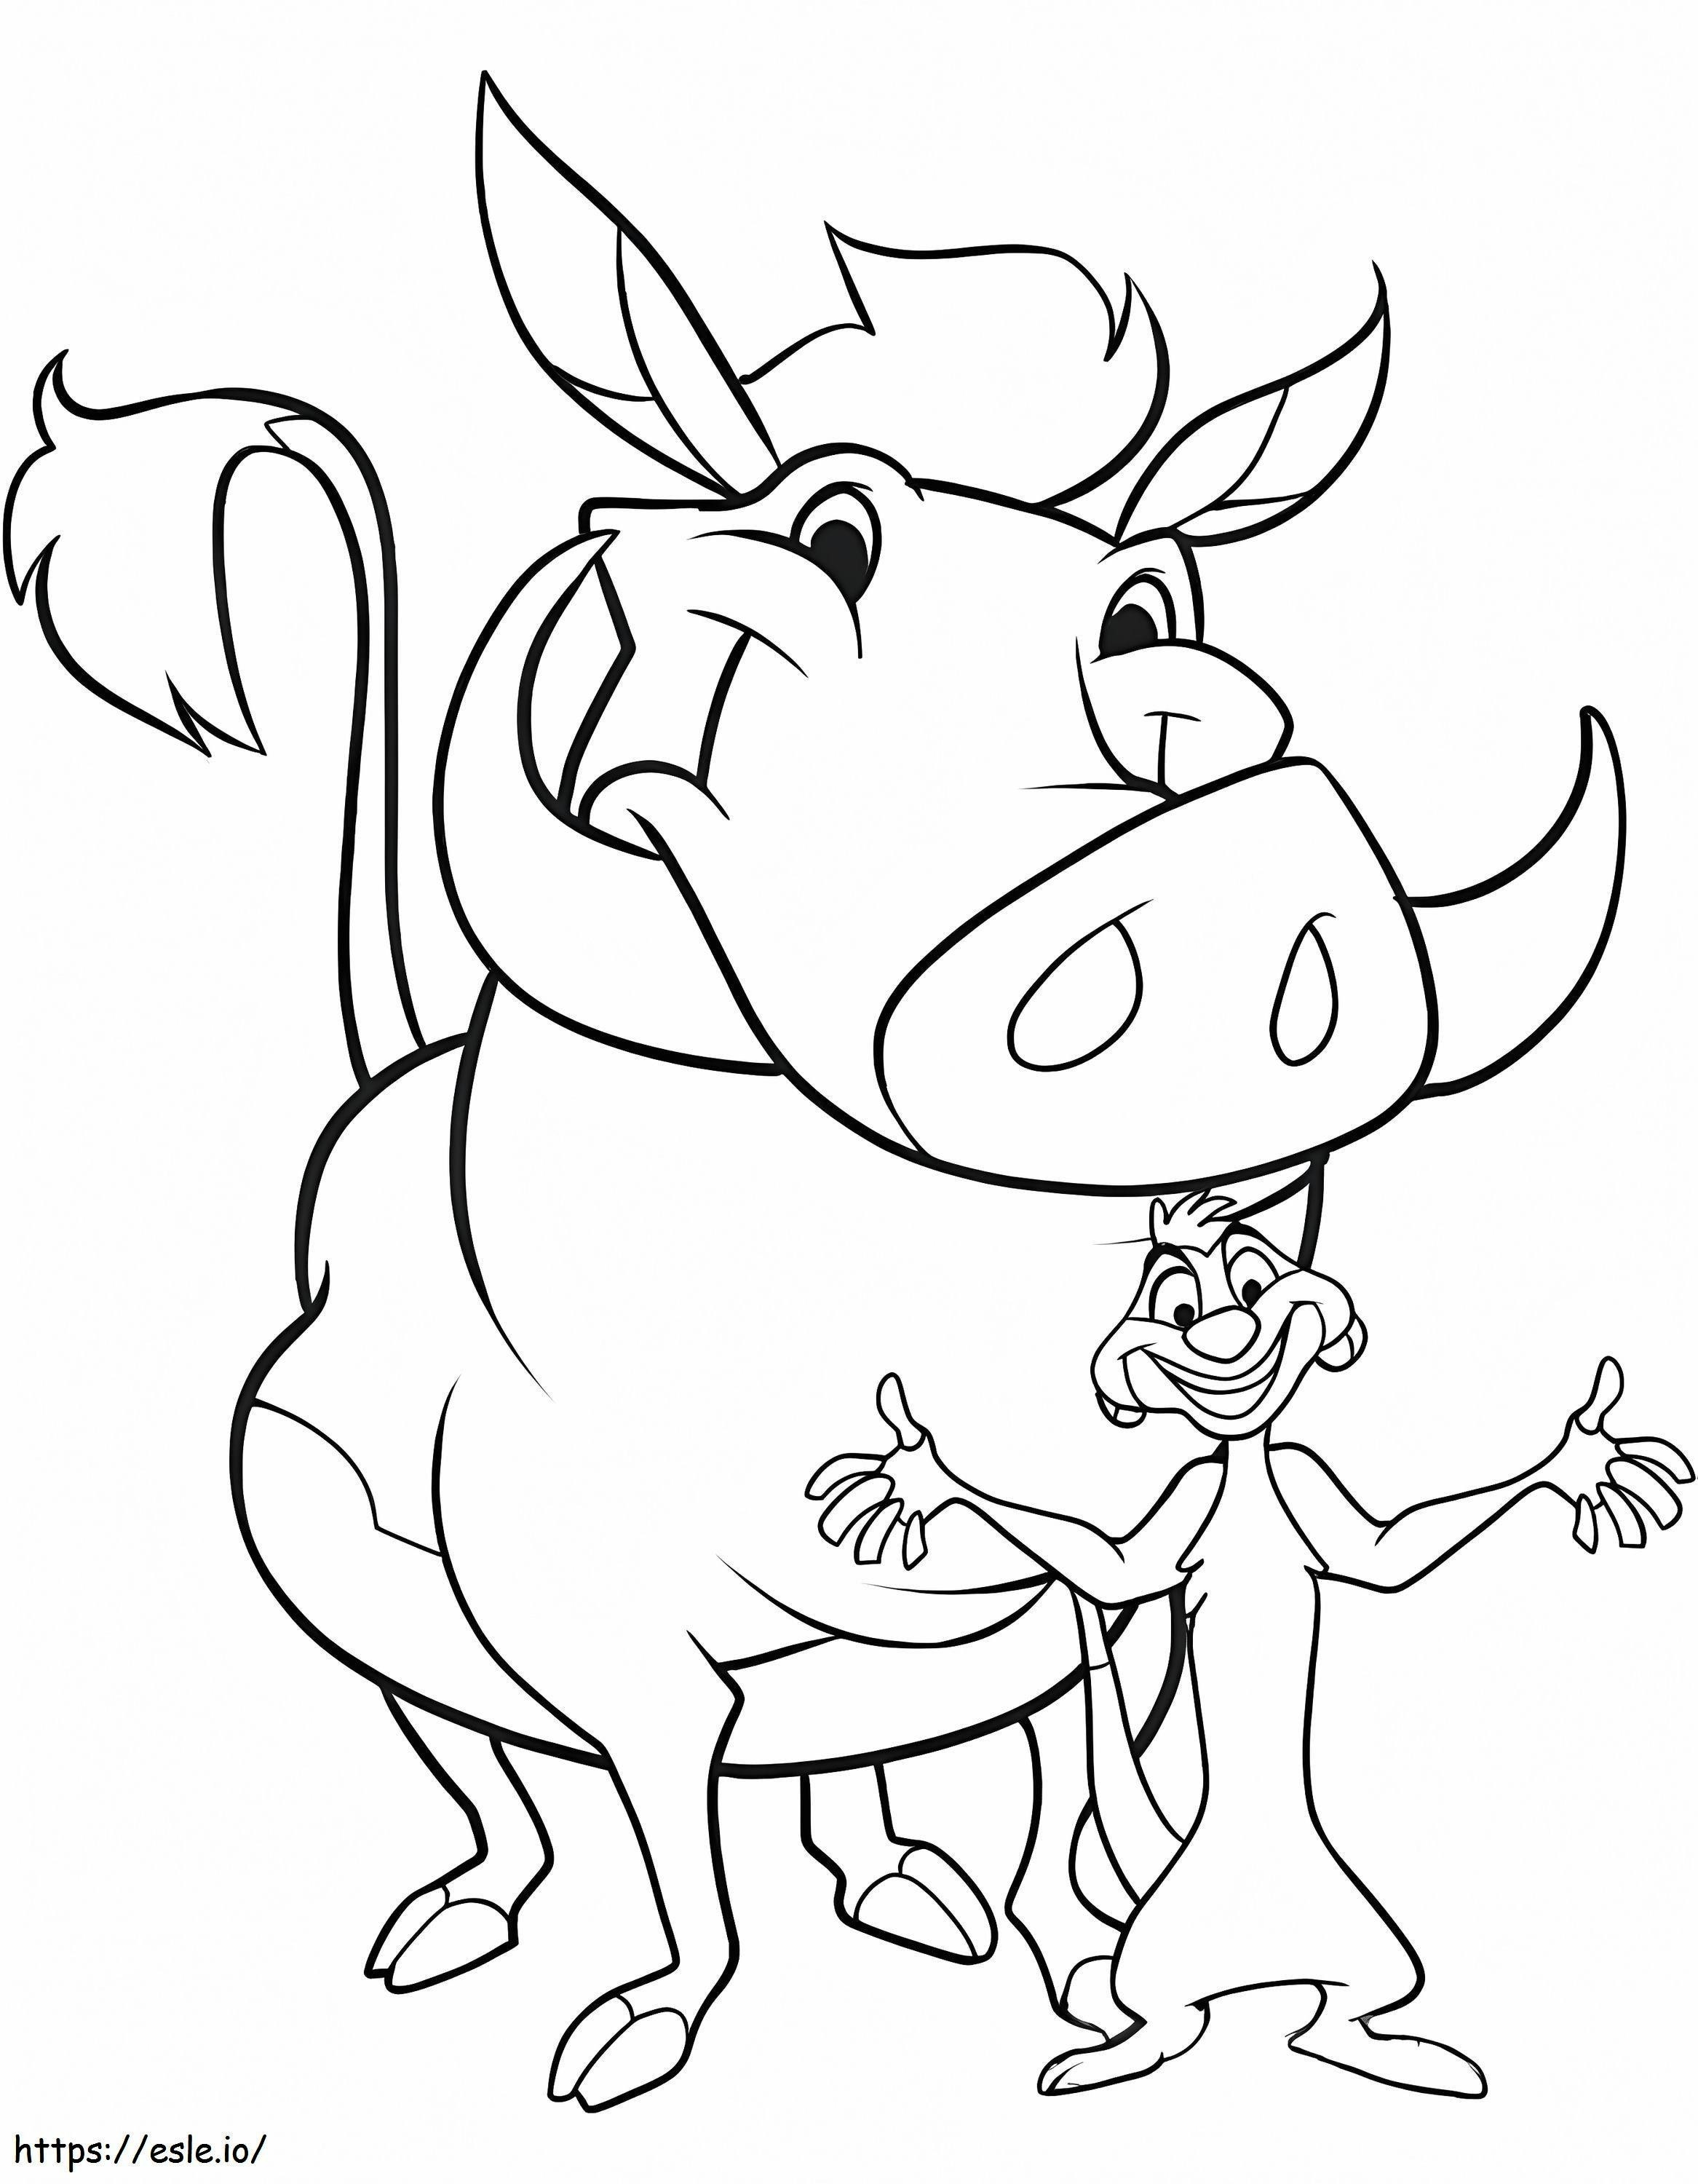 Timon i Pumba dla dzieci kolorowanka